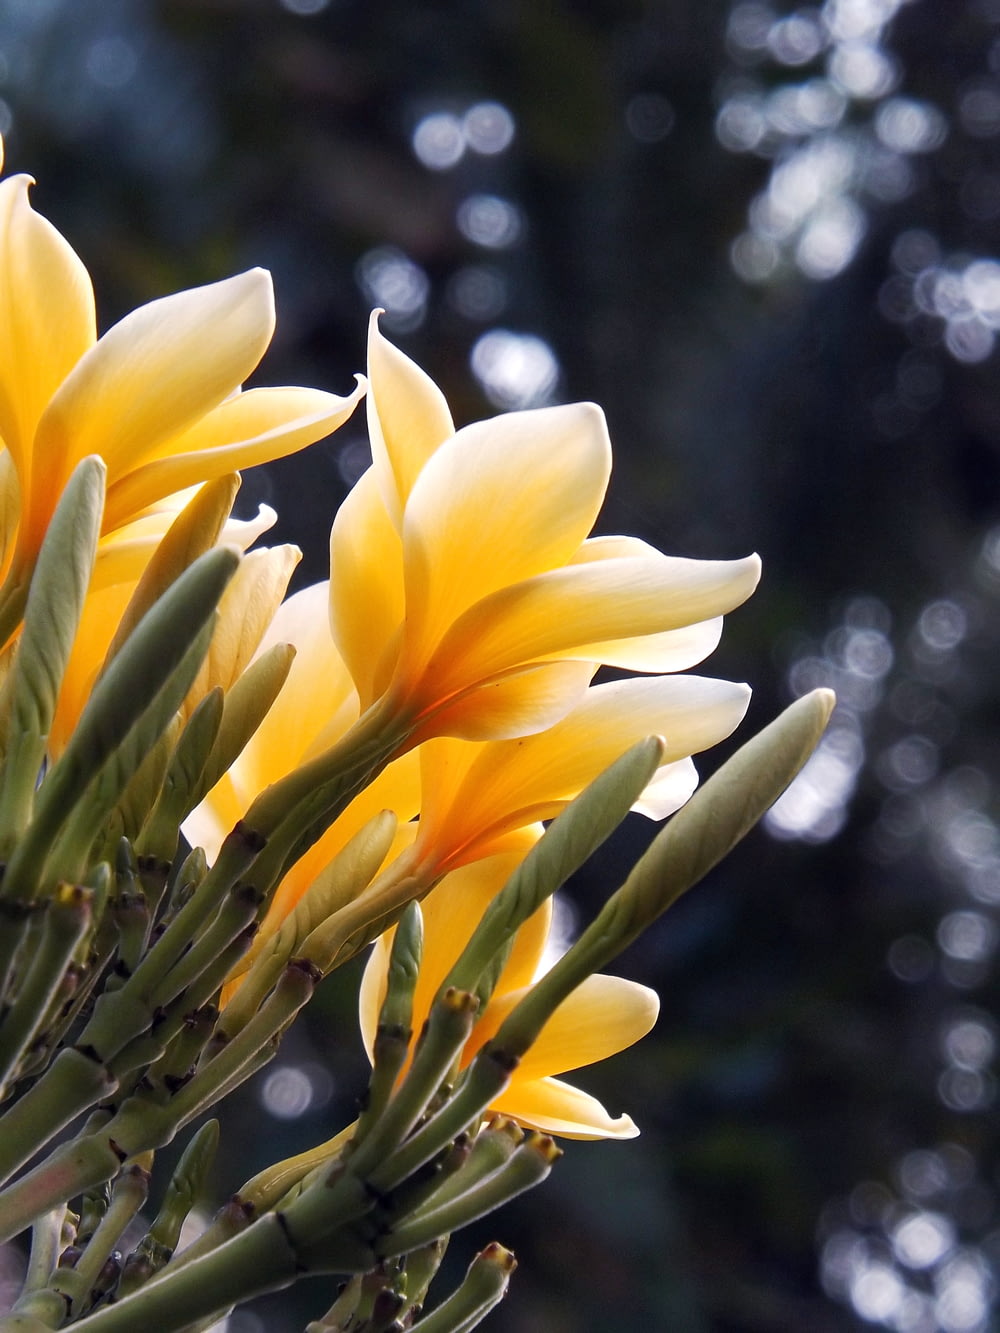 틸트 시프트 렌즈의 노란색과 흰색 꽃